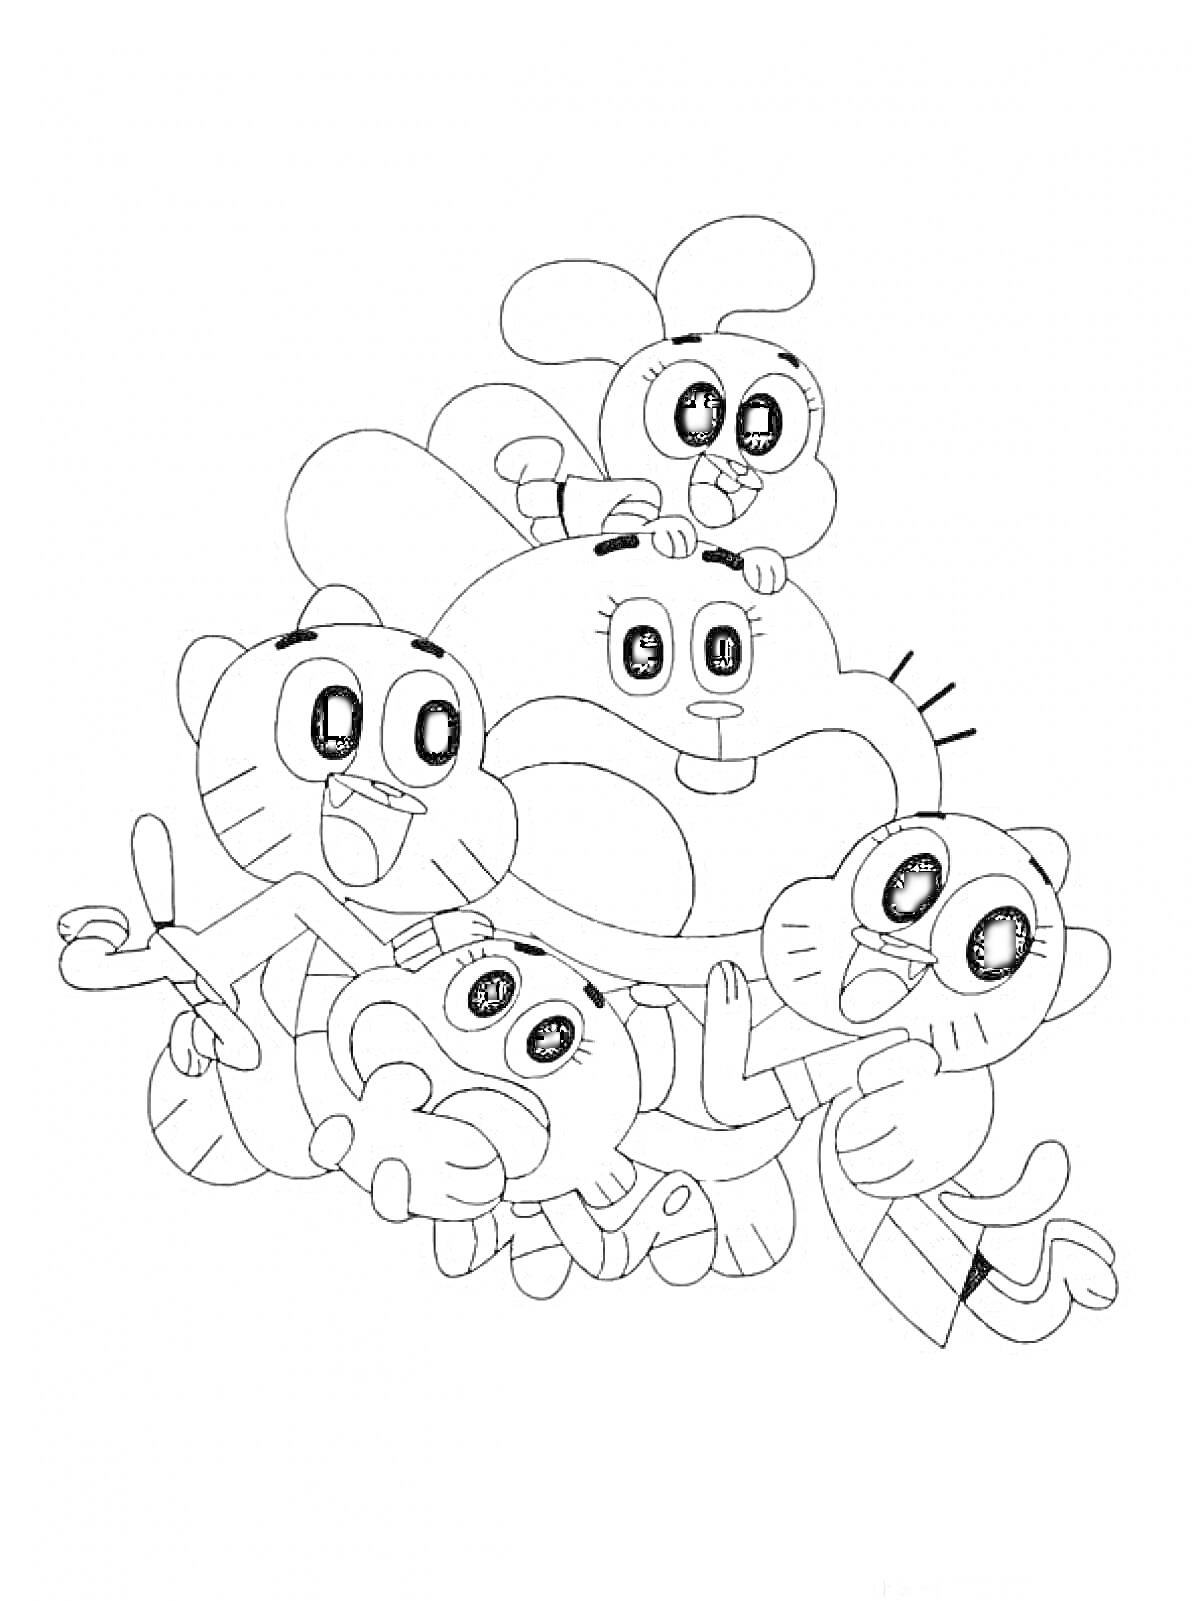 Счастливая семья Гамбола с четырьмя персонажами, плотно обнявшими друг друга